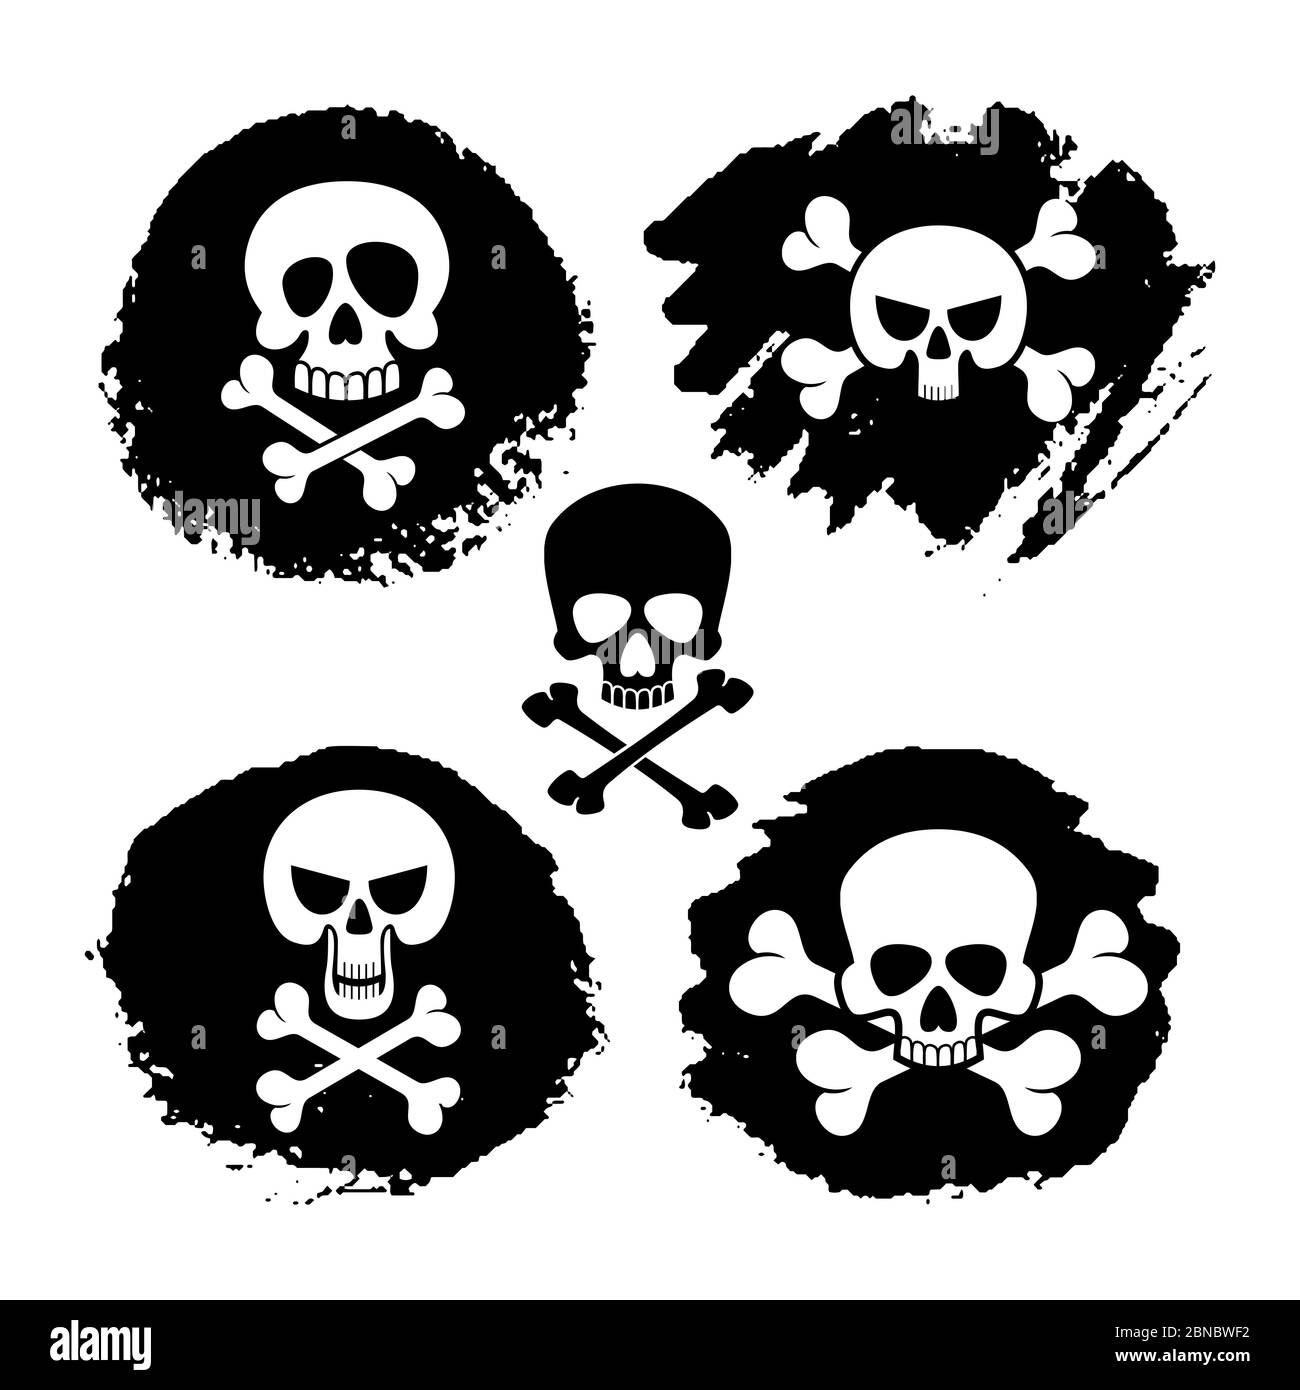 Weiße Piraterie Schädel und Crossbones Vektor-Icons. Tod, gruselige Symbole und Grunge Dekor Illustration Stock Vektor